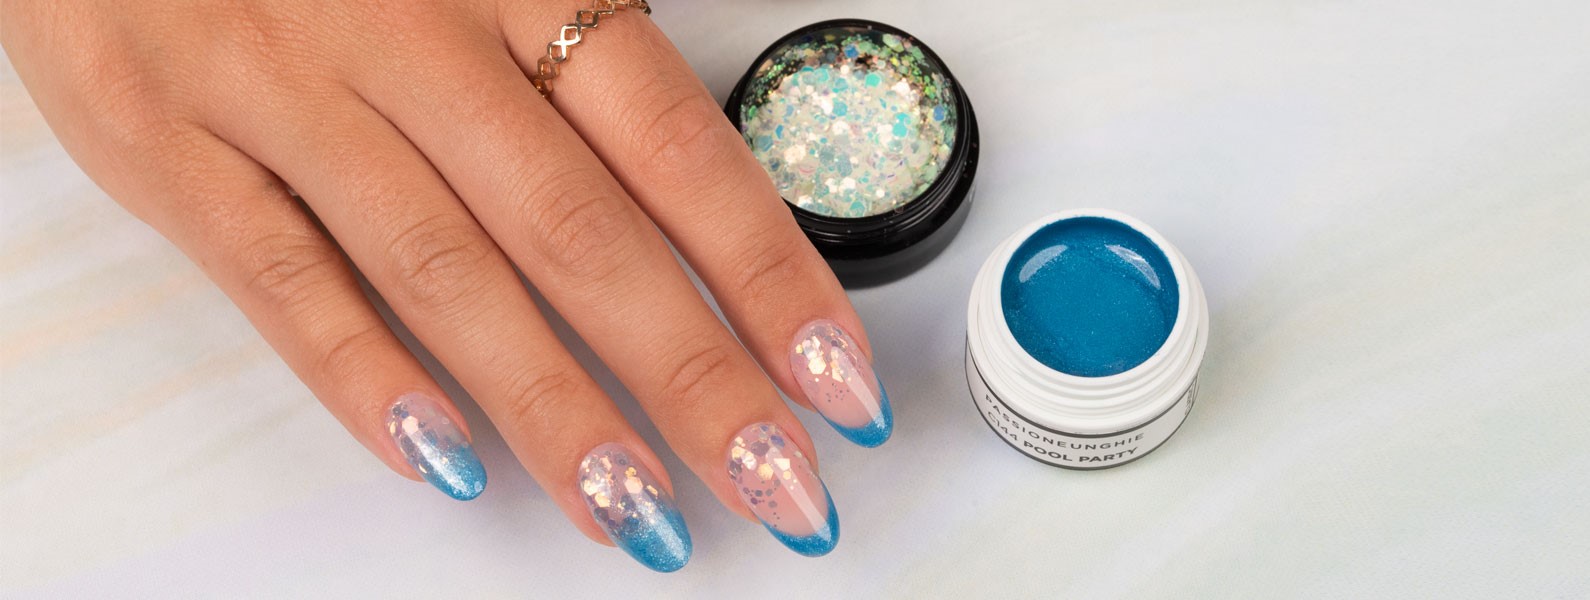 French manicure con gel UV colorato e glitter